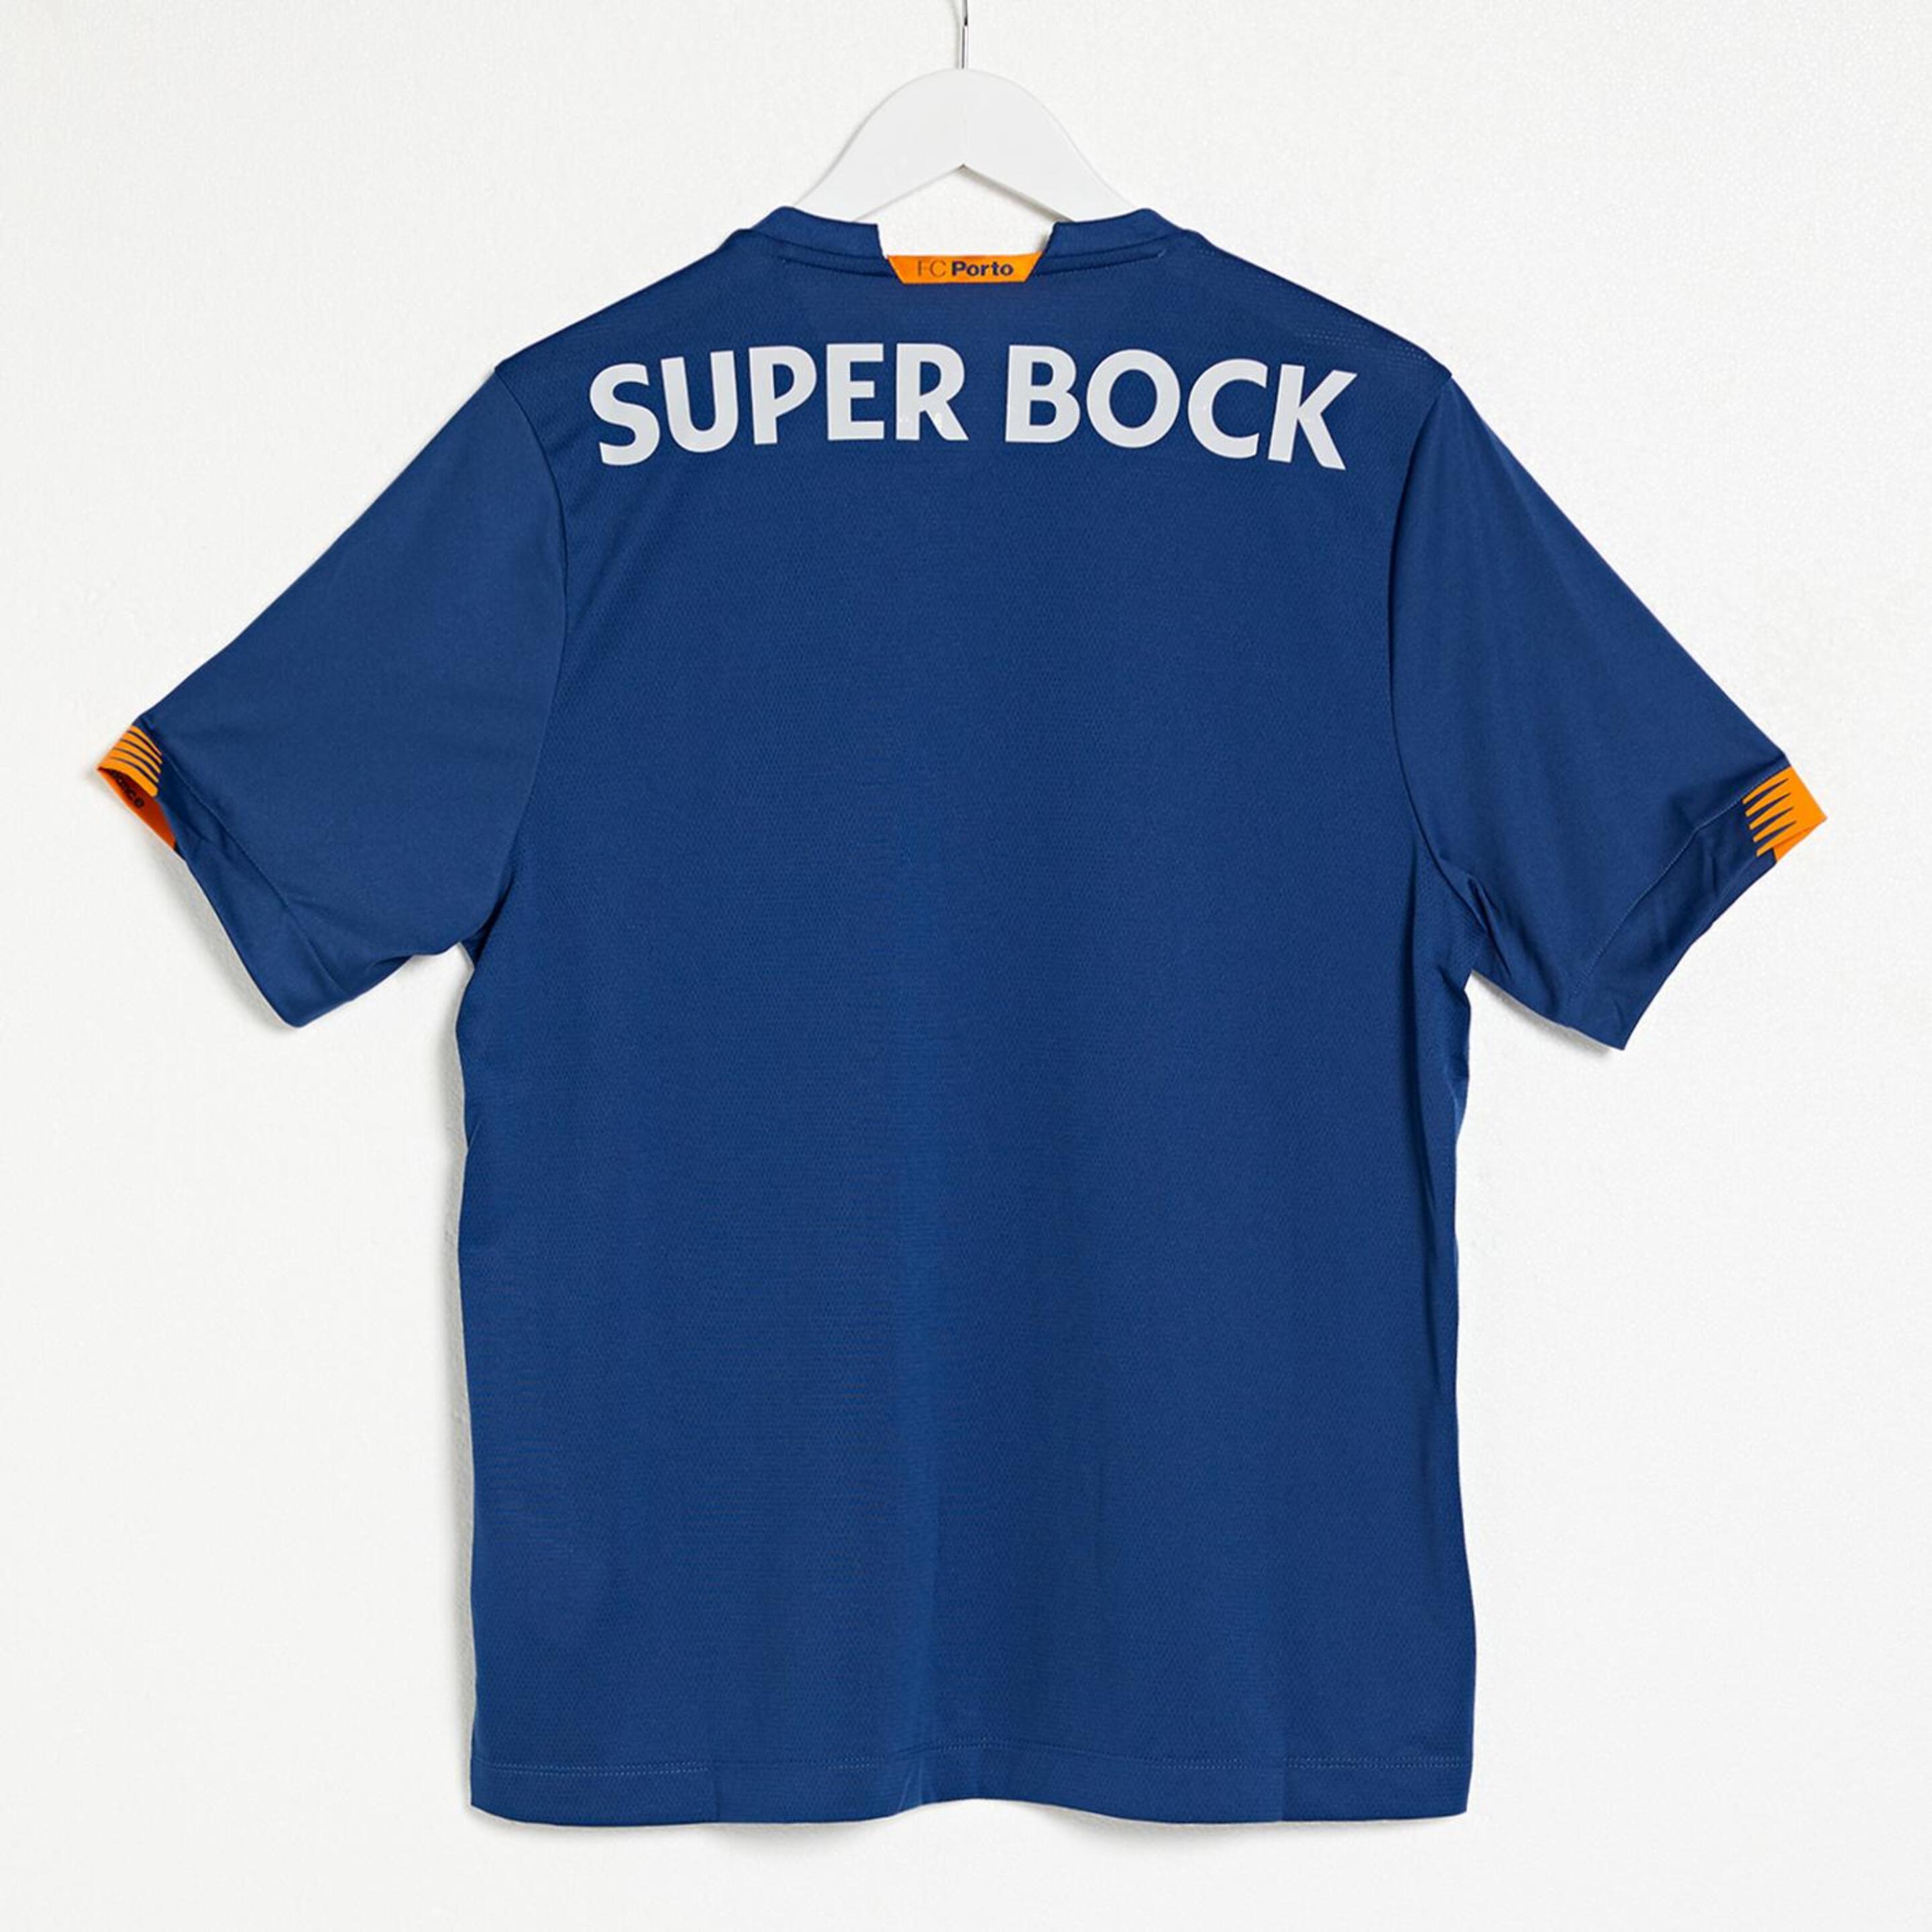 Camiseta Fc Porto